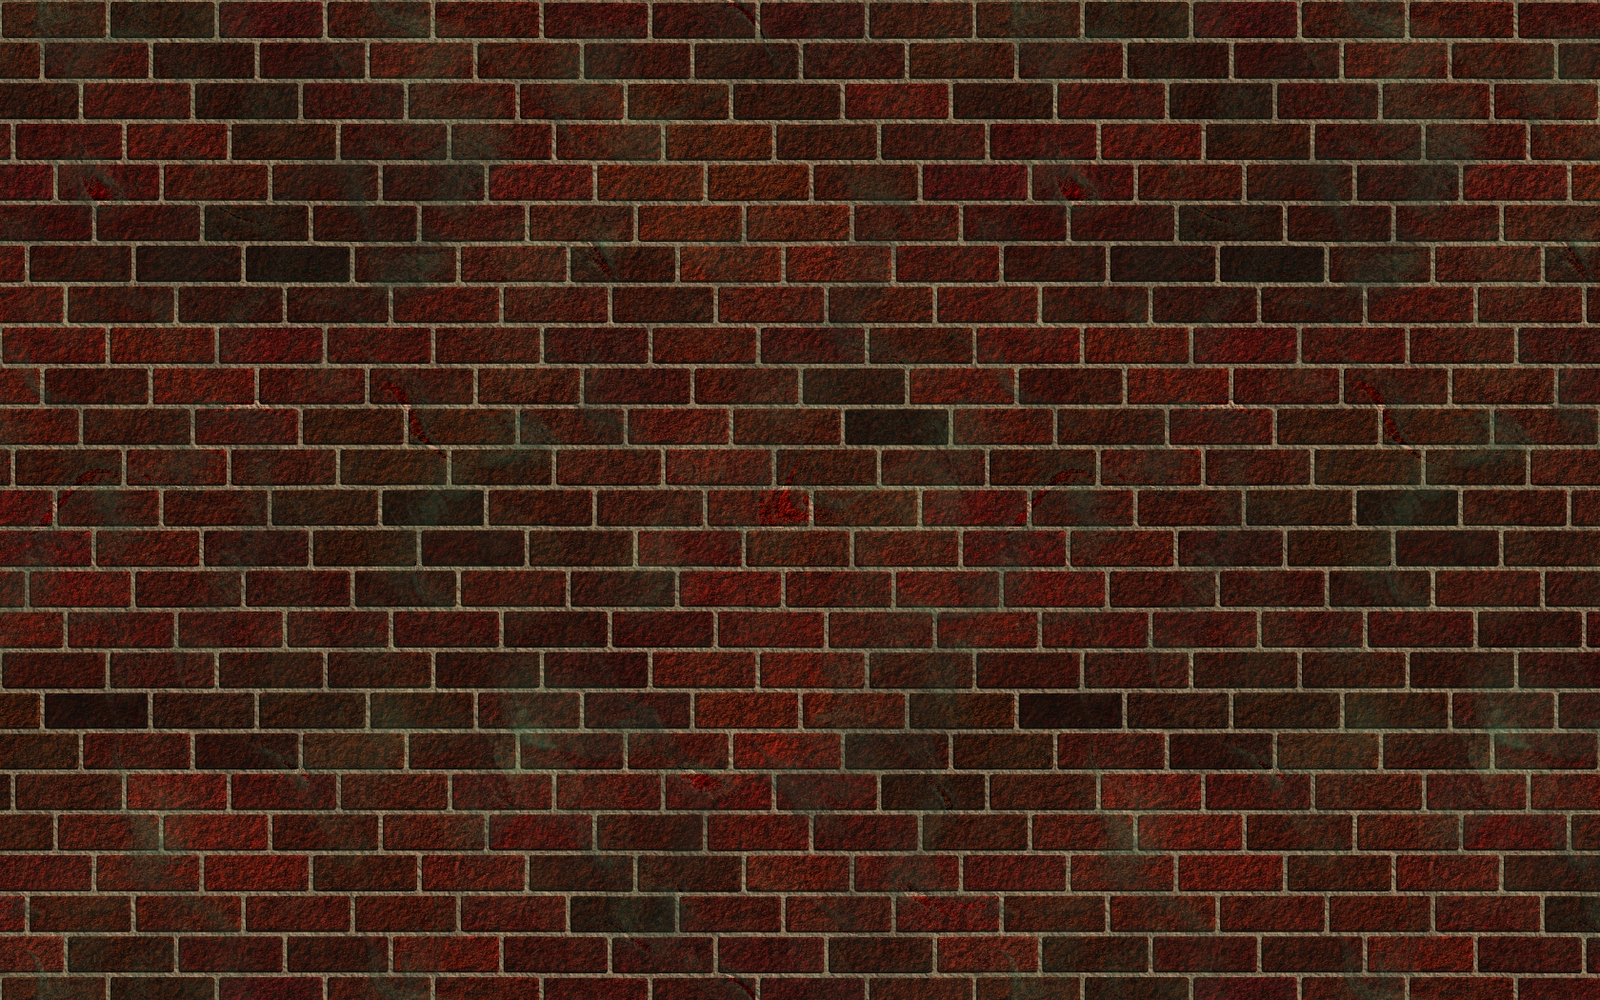 Brick_Wall_Background.png?mu0